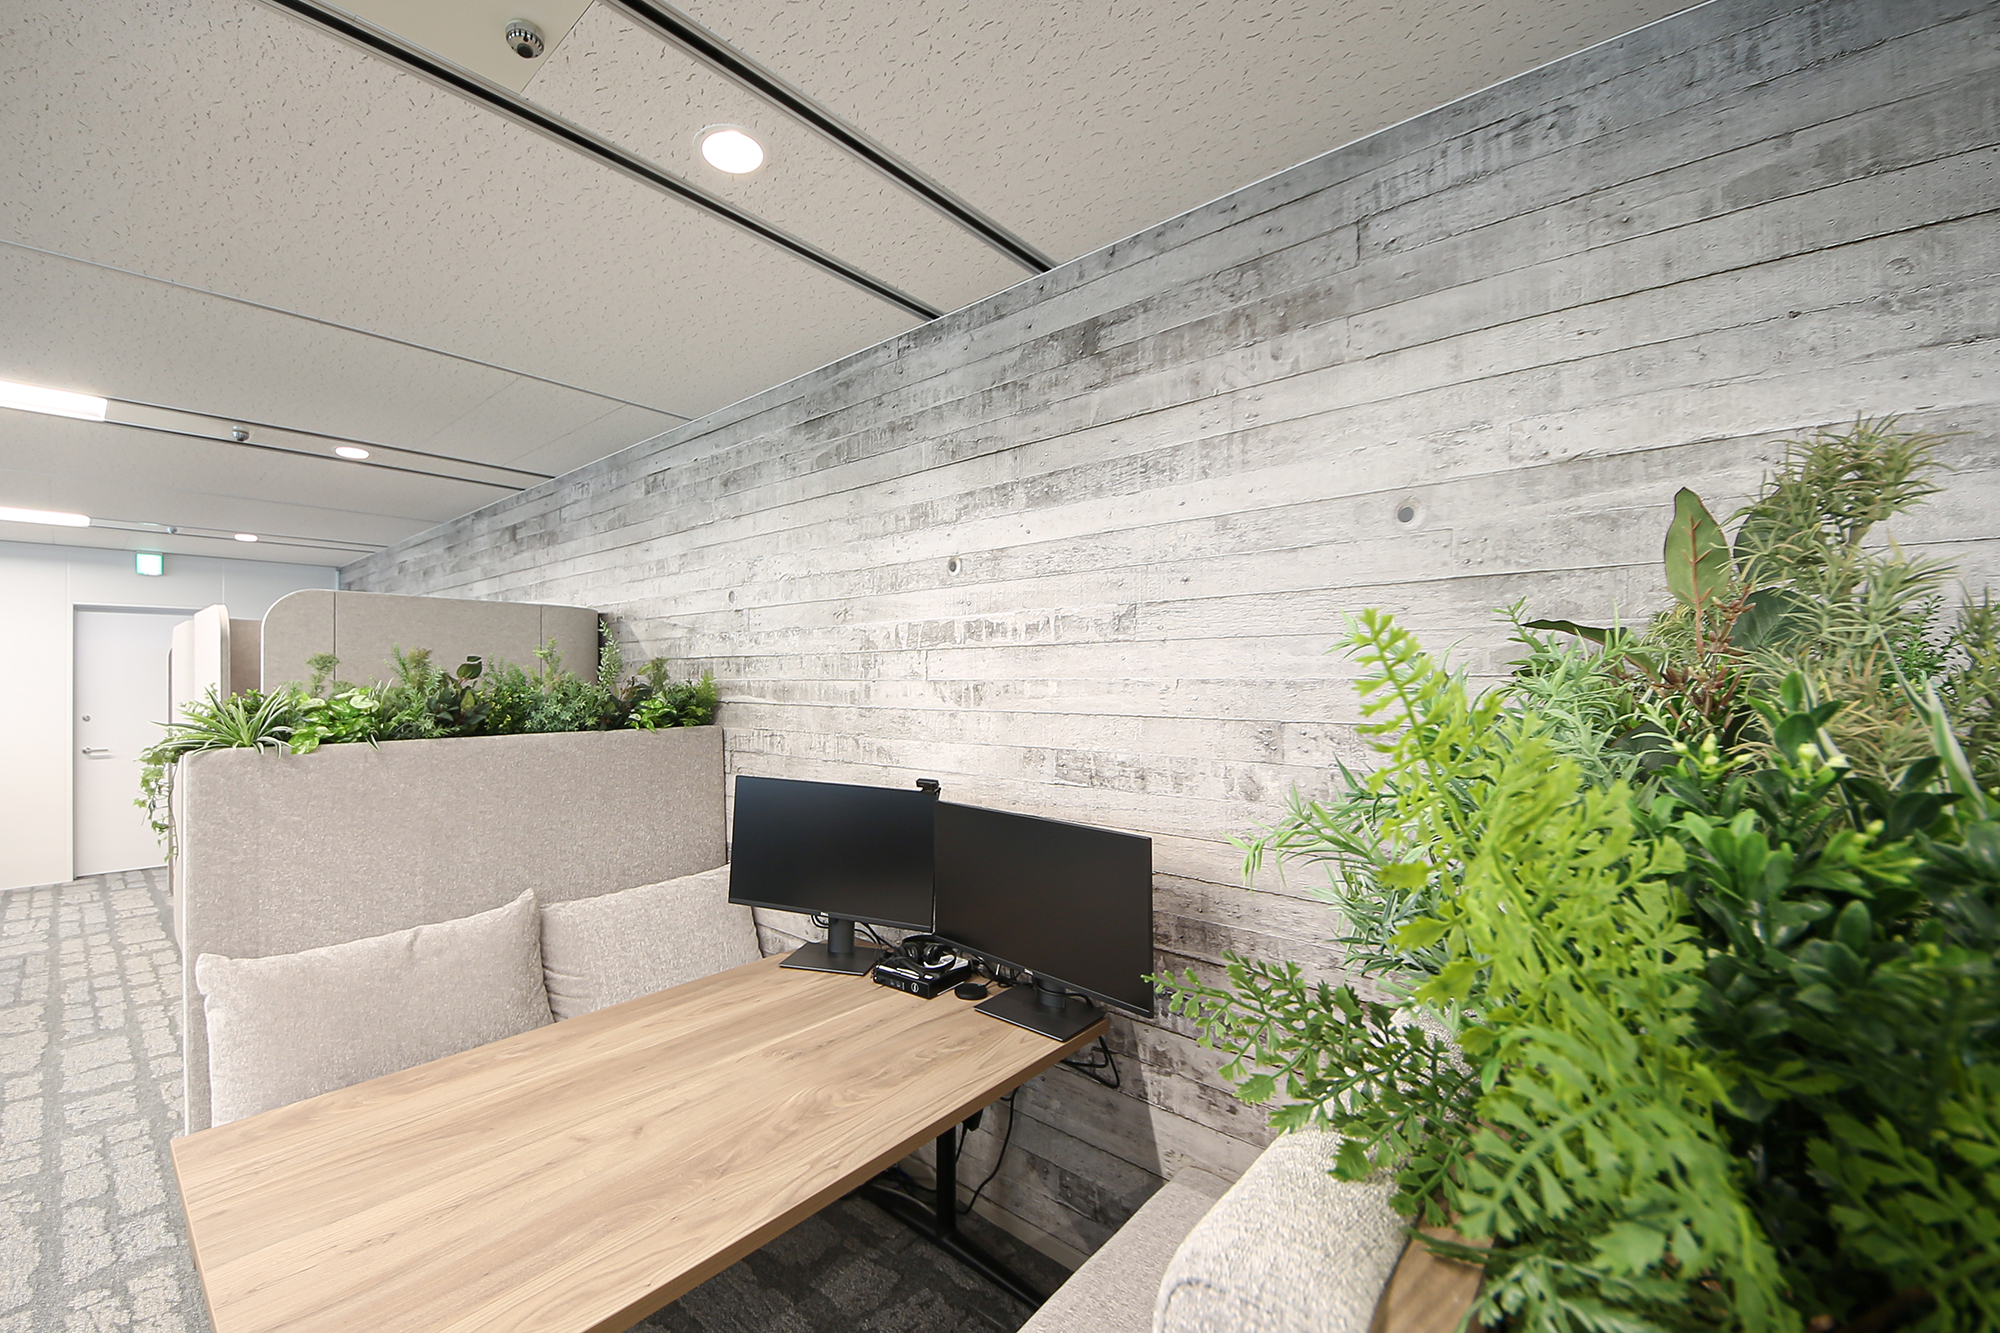 東京都新宿区のオフィスに採用された、lookシリーズのリアルな素材感が印象的な「Old House / LKST037」。